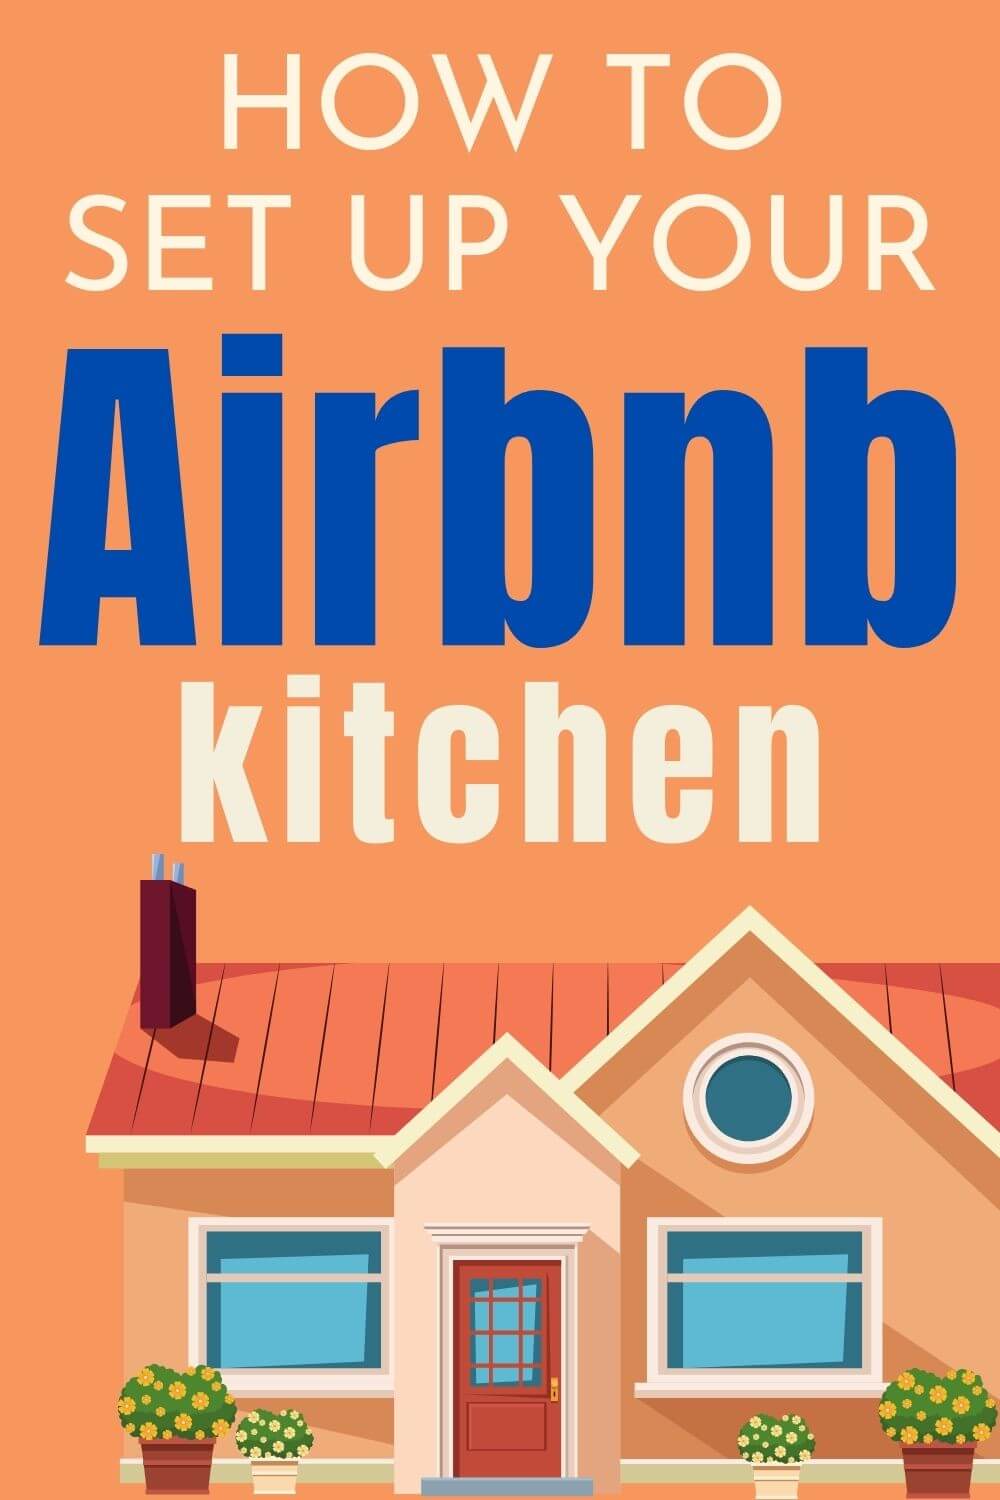 Checklist of Airbnb Kitchen Essentials